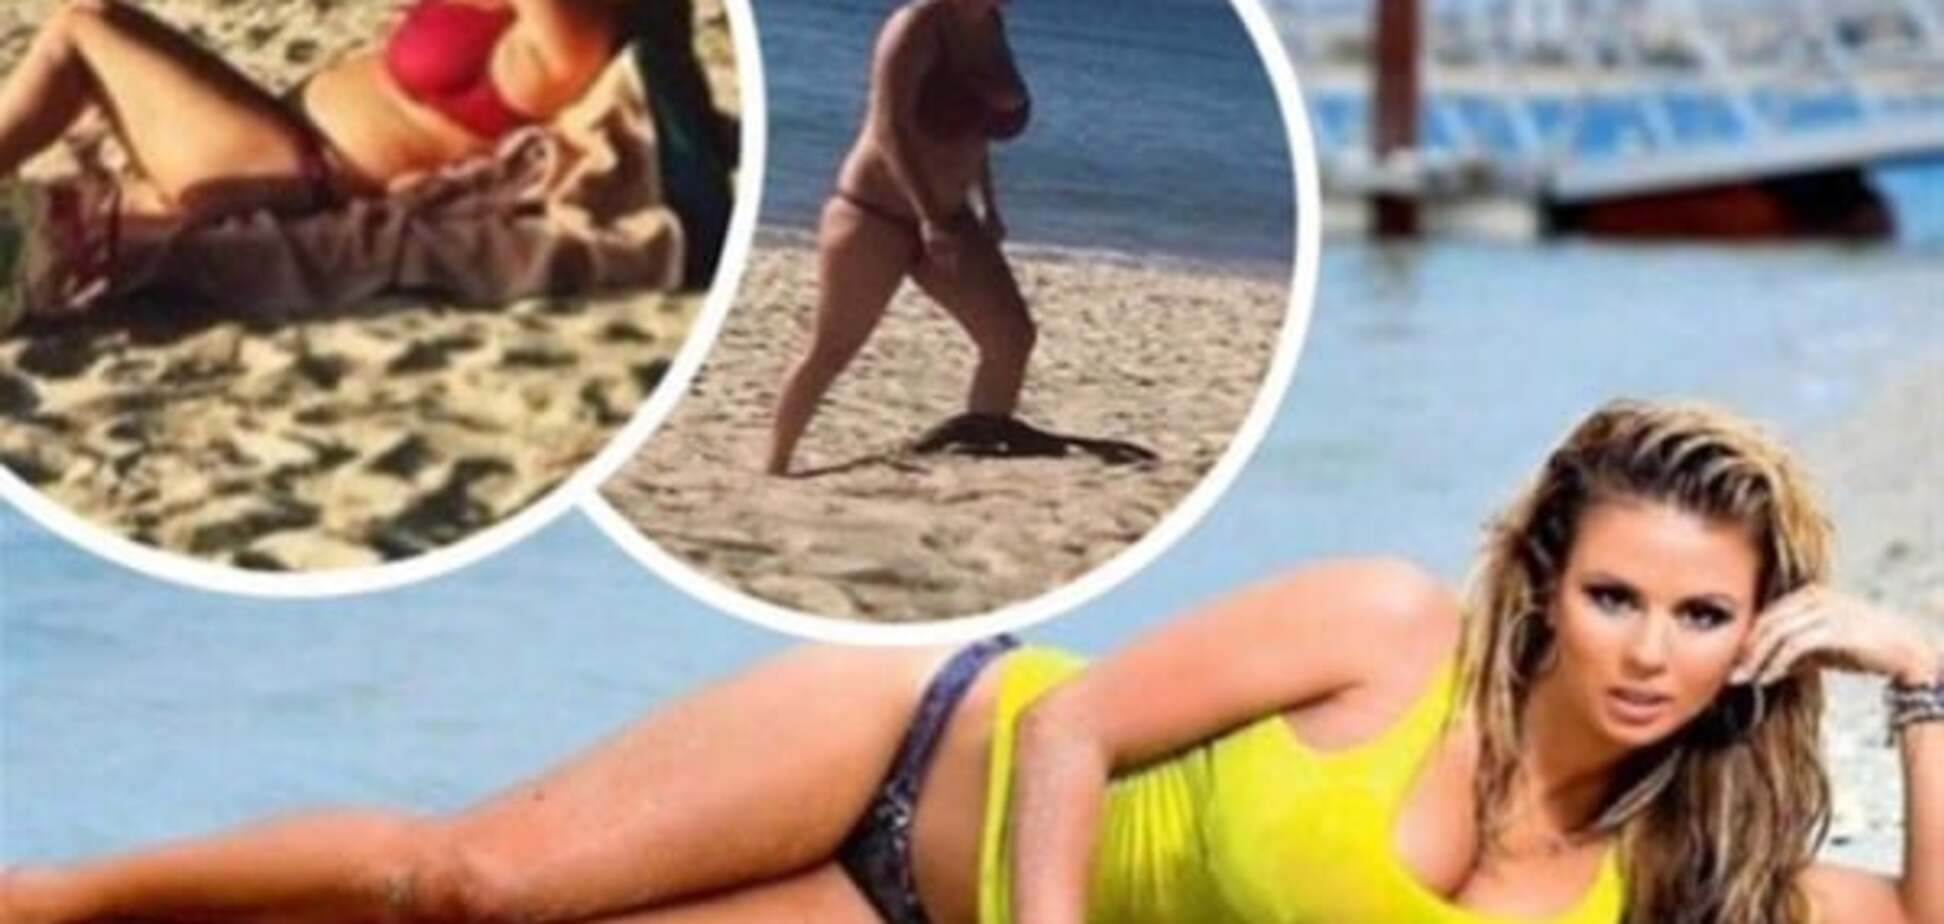 Анна Семенович шокировала располневшей фигурой на пляже